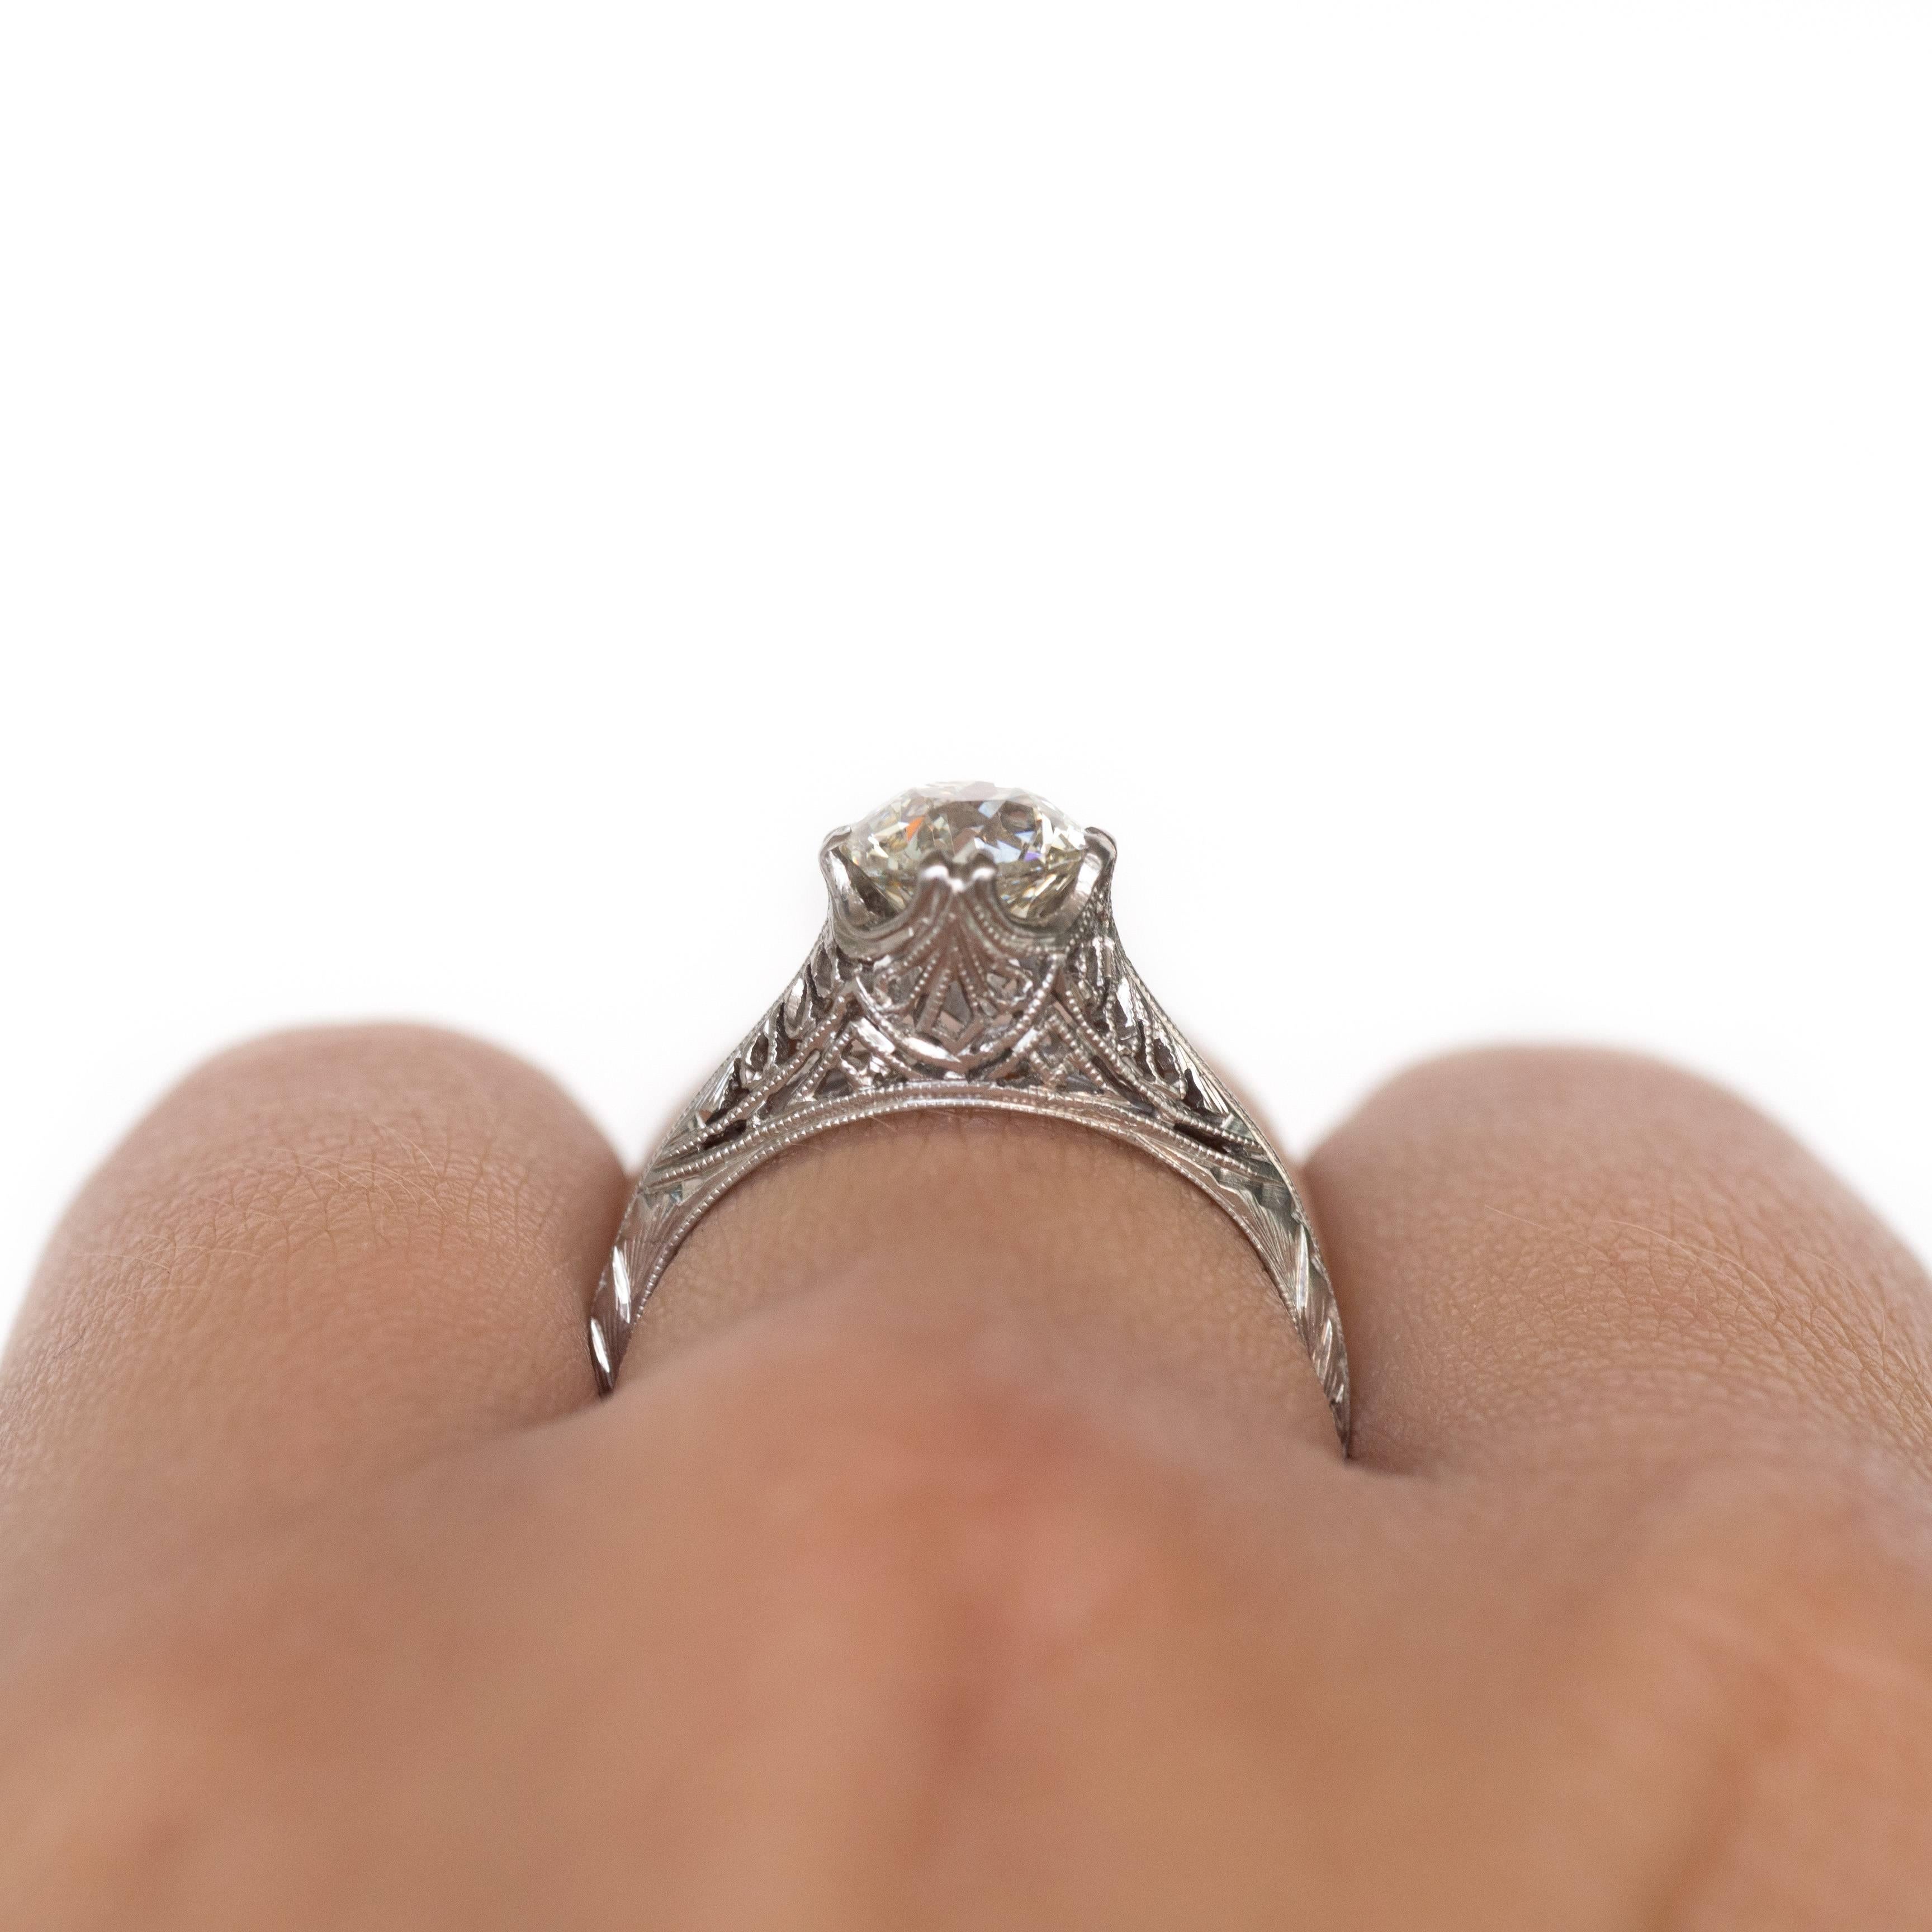 1.24 Carat Diamond Platinum Engagement Ring In Excellent Condition For Sale In Atlanta, GA